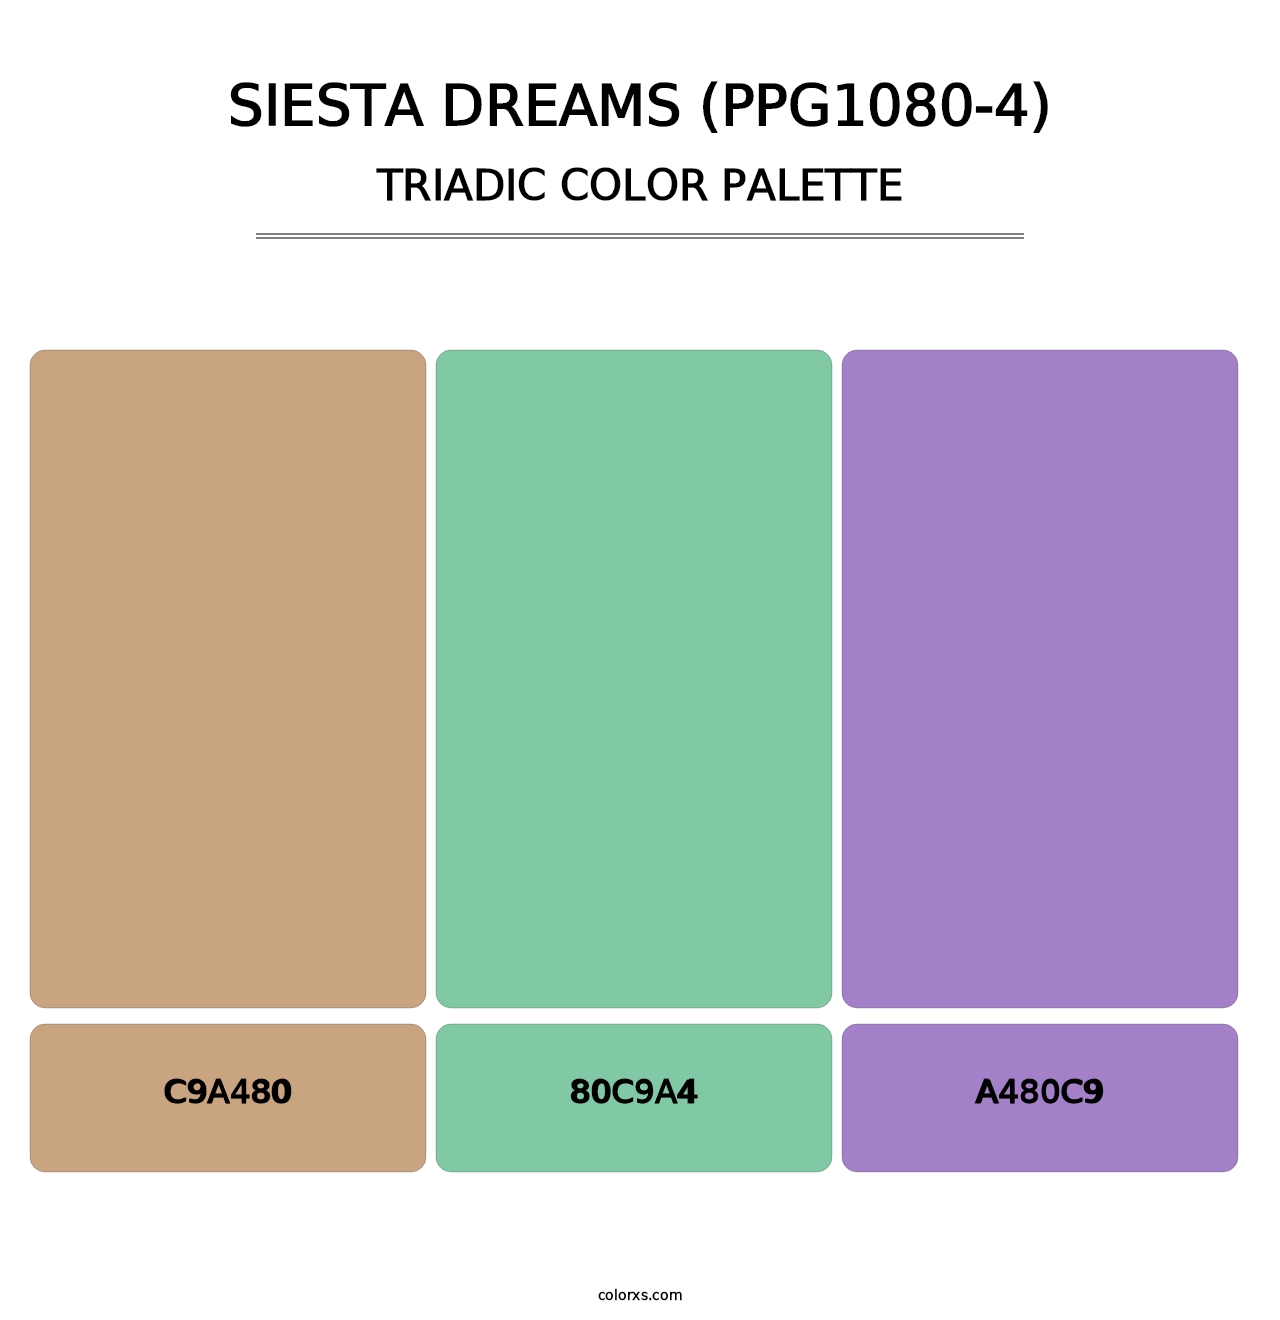 Siesta Dreams (PPG1080-4) - Triadic Color Palette